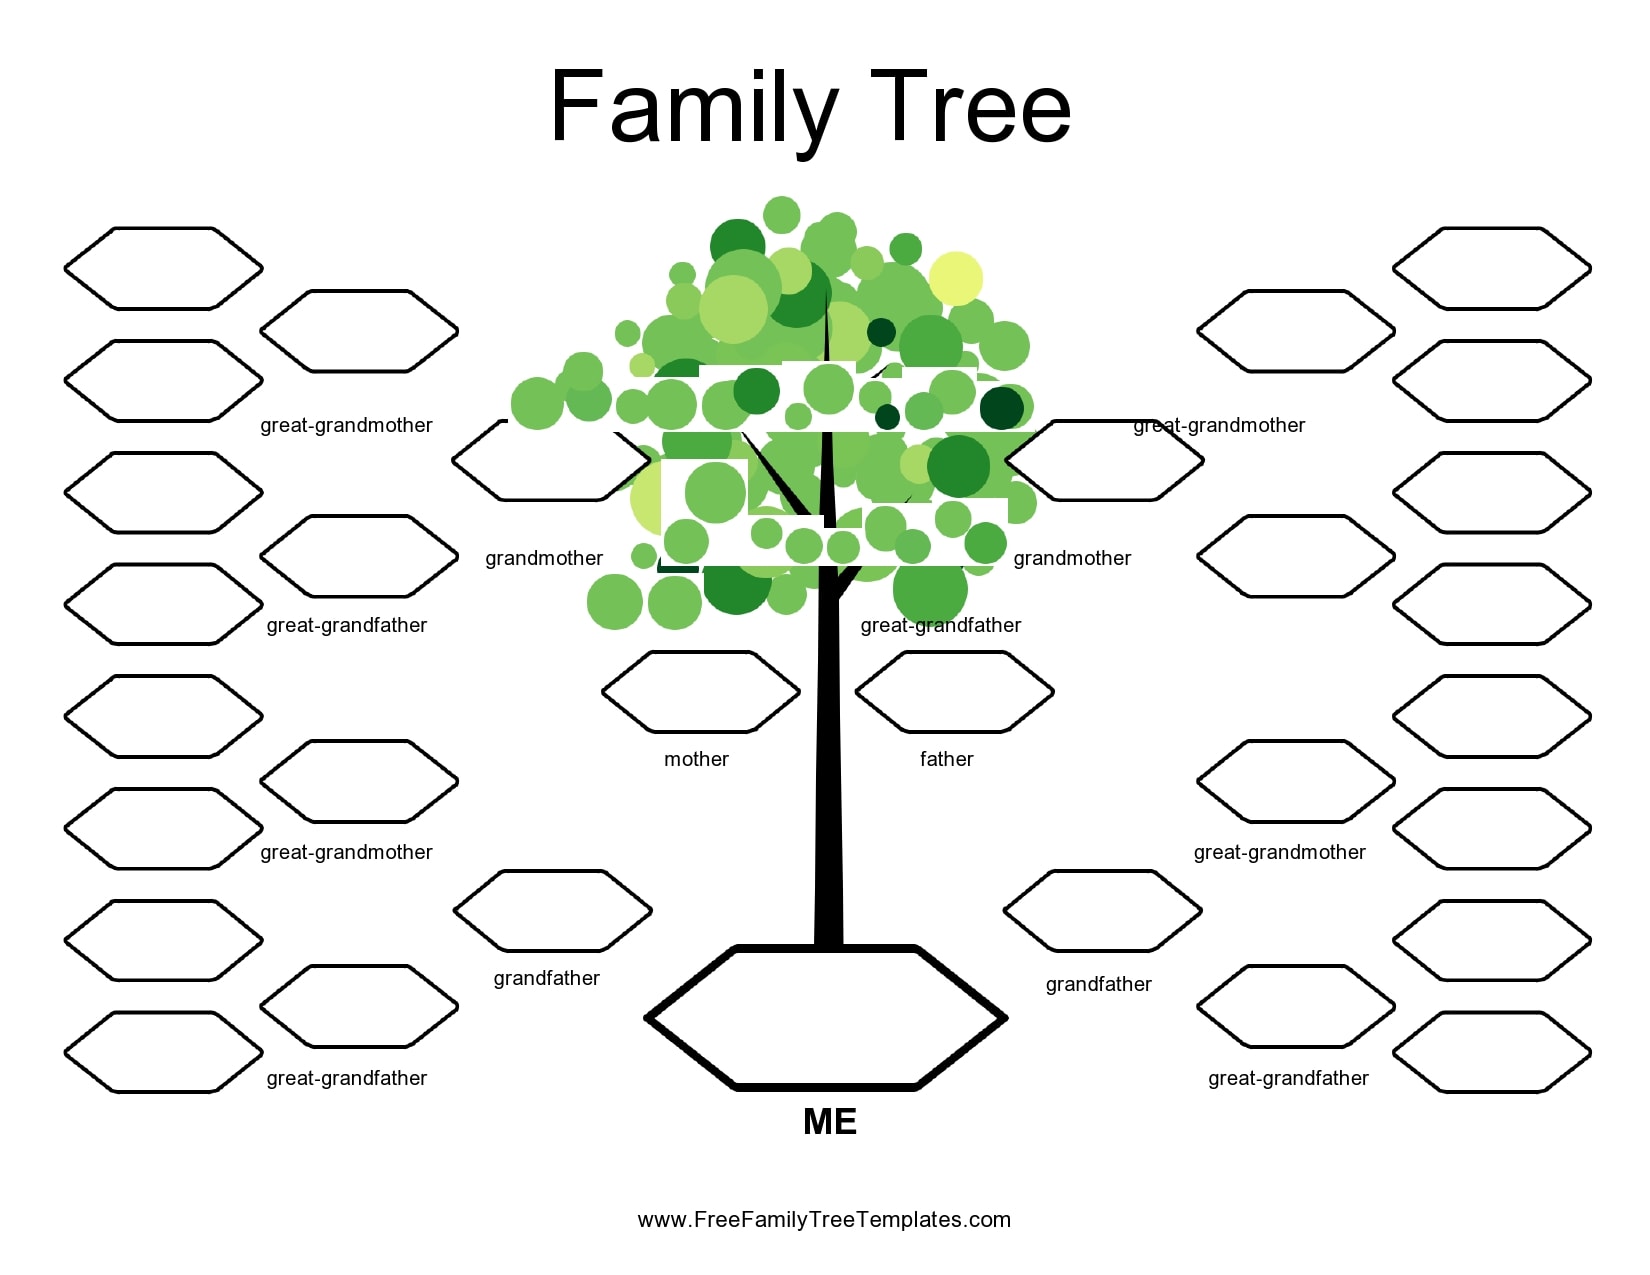 Free Printable Family Tree Diagram Peatix